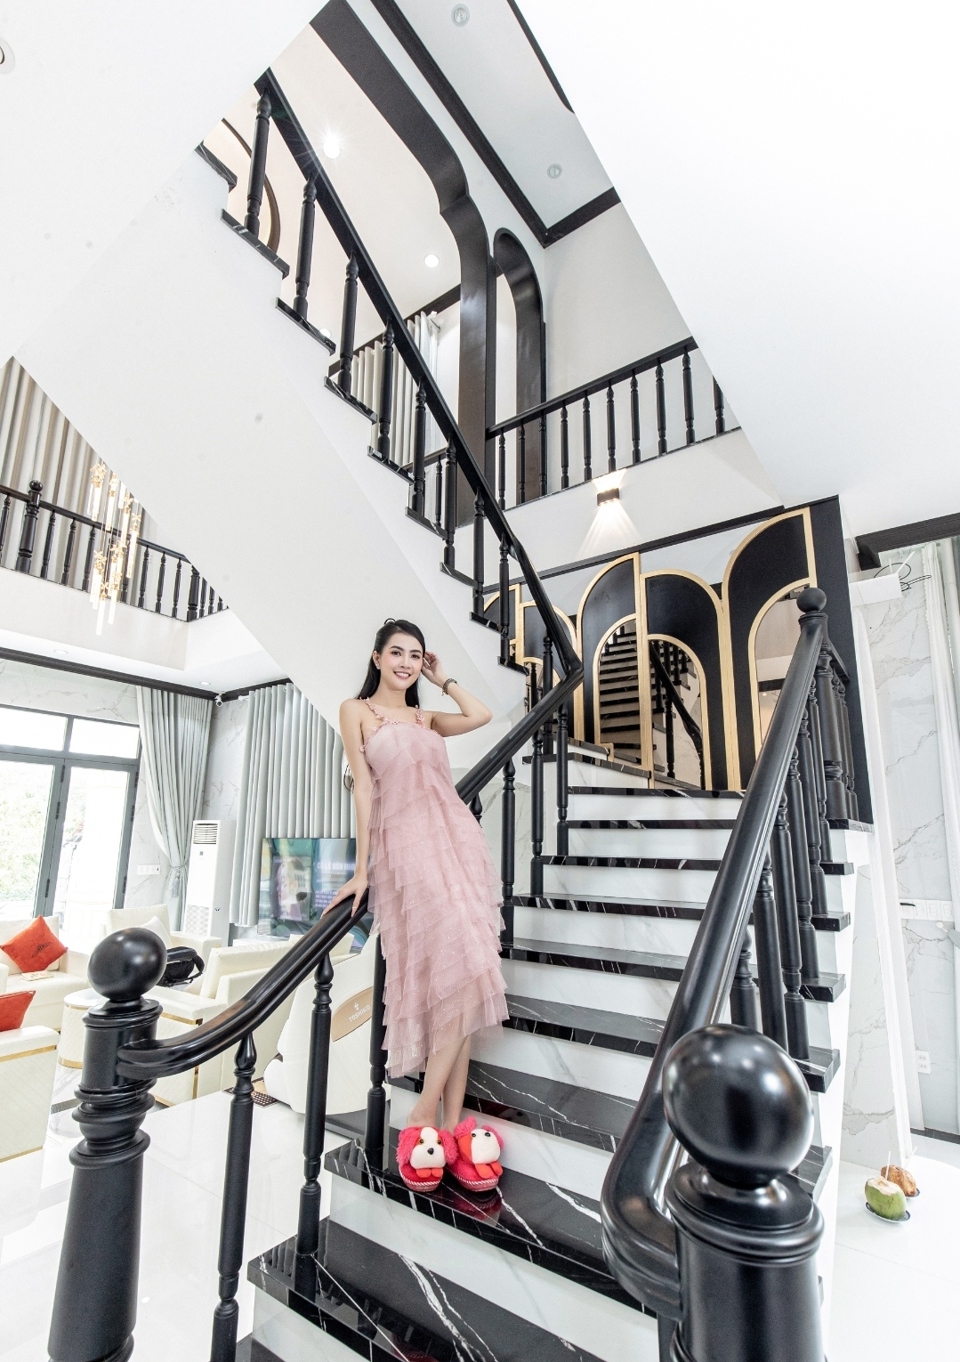 Hoa hậu Phan Thị Mơ xây biệt thự 10 tỷ đồng tặng ba mẹ - Ảnh 2